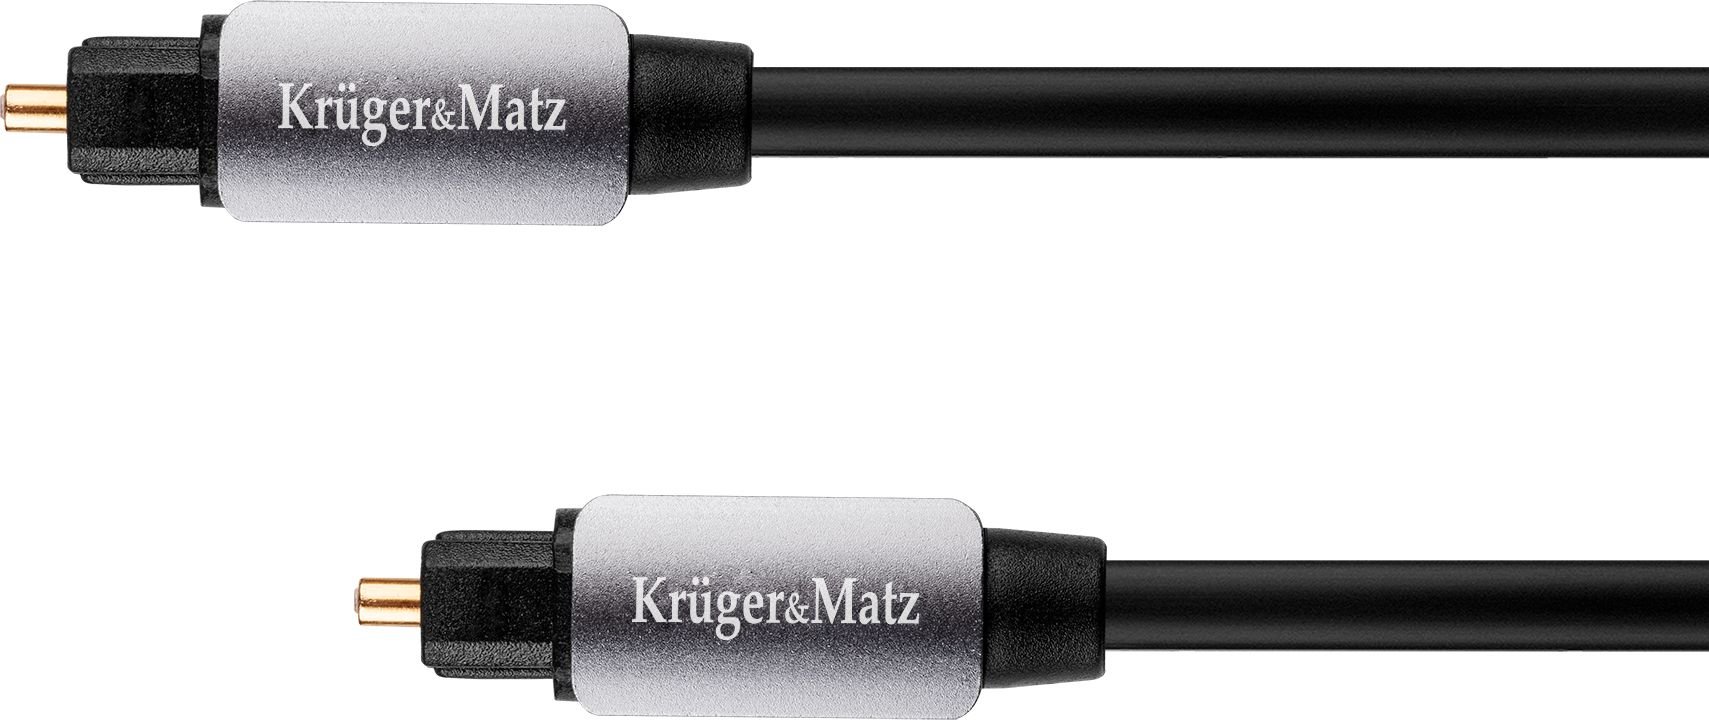 Kruger&Matz Toslink - Cablu Toslink 2m negru (KM0321)